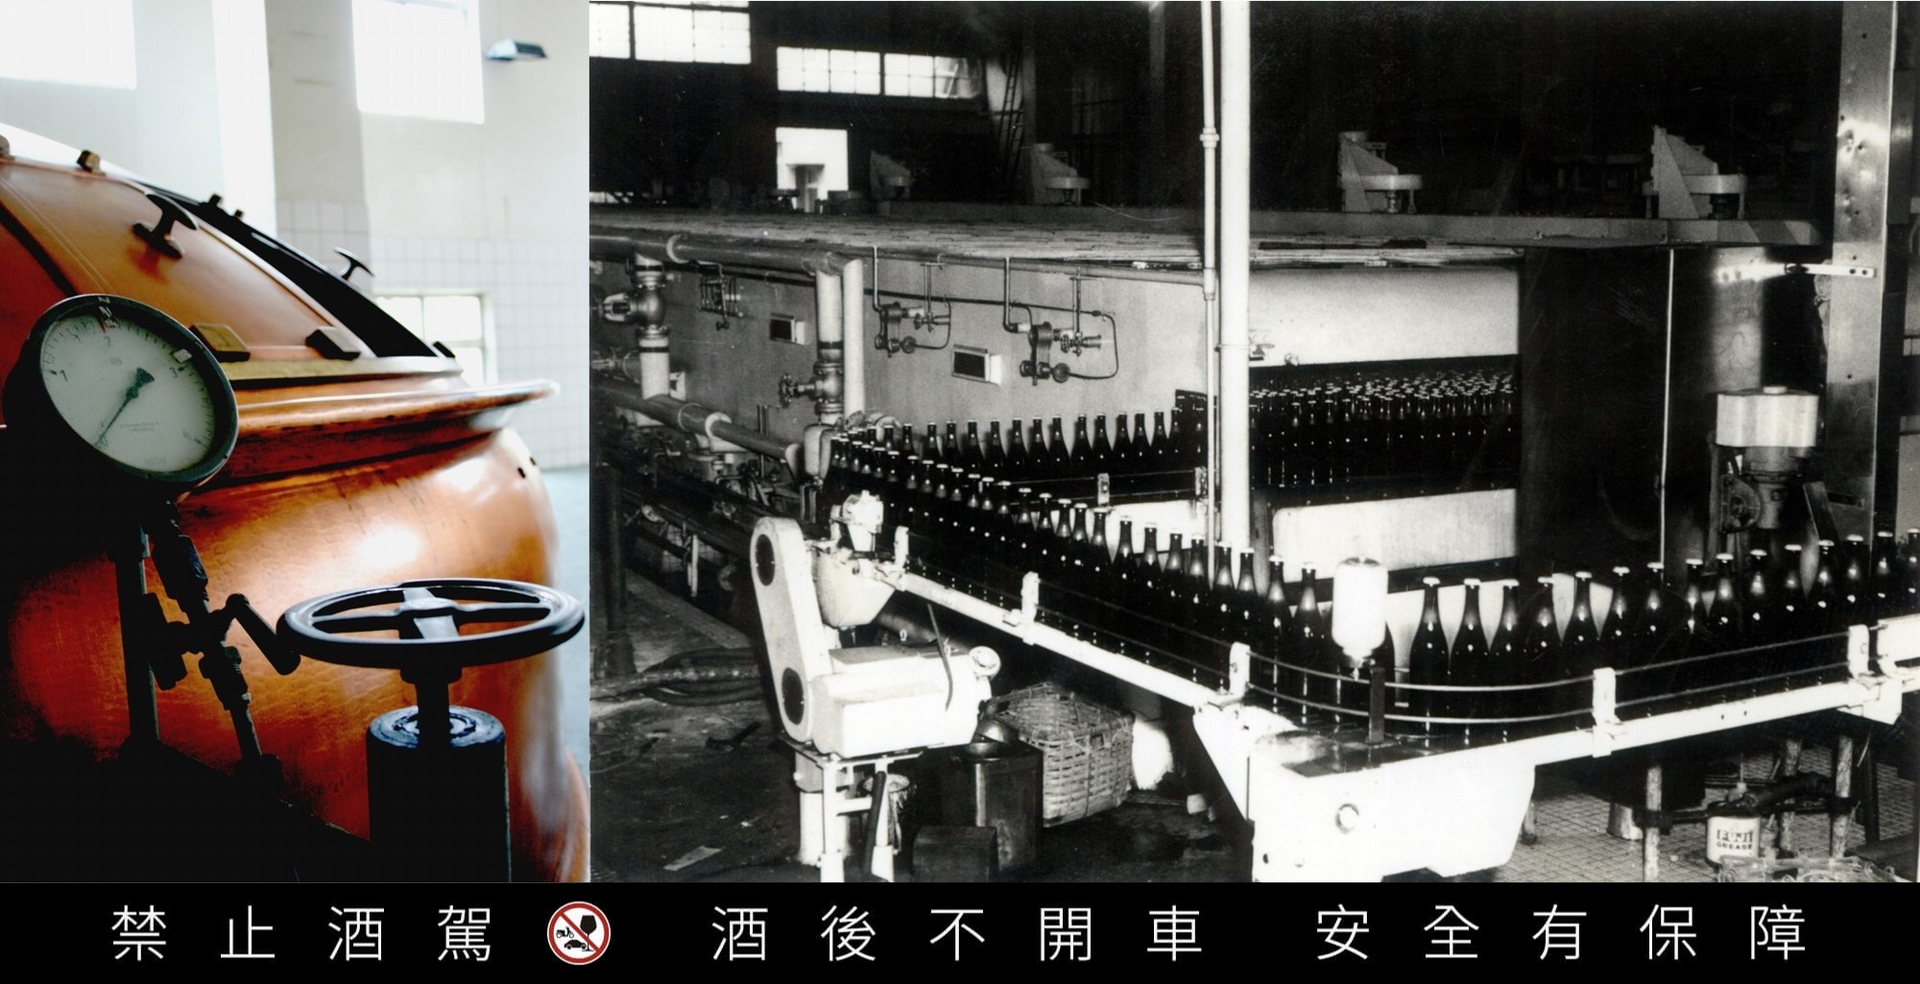 (左)全世界僅留存十座的德製銅製糖化釜 (右) 員工與設備舊照